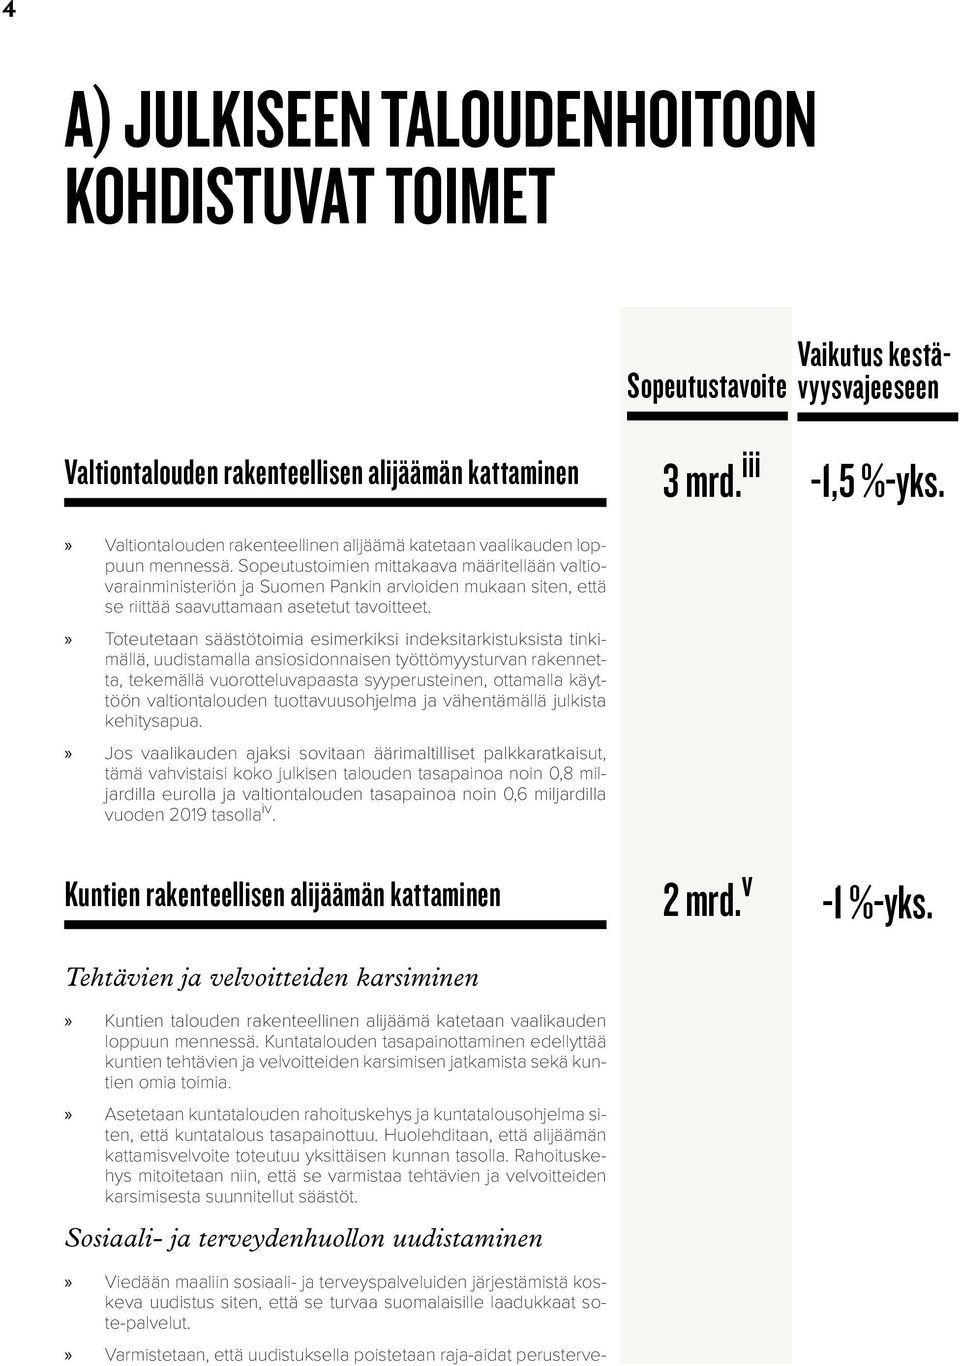 Sopeutustoimien mittakaava määritellään valtiovarainministeriön ja Suomen Pankin arvioiden mukaan siten, että se riittää saavuttamaan asetetut tavoitteet.